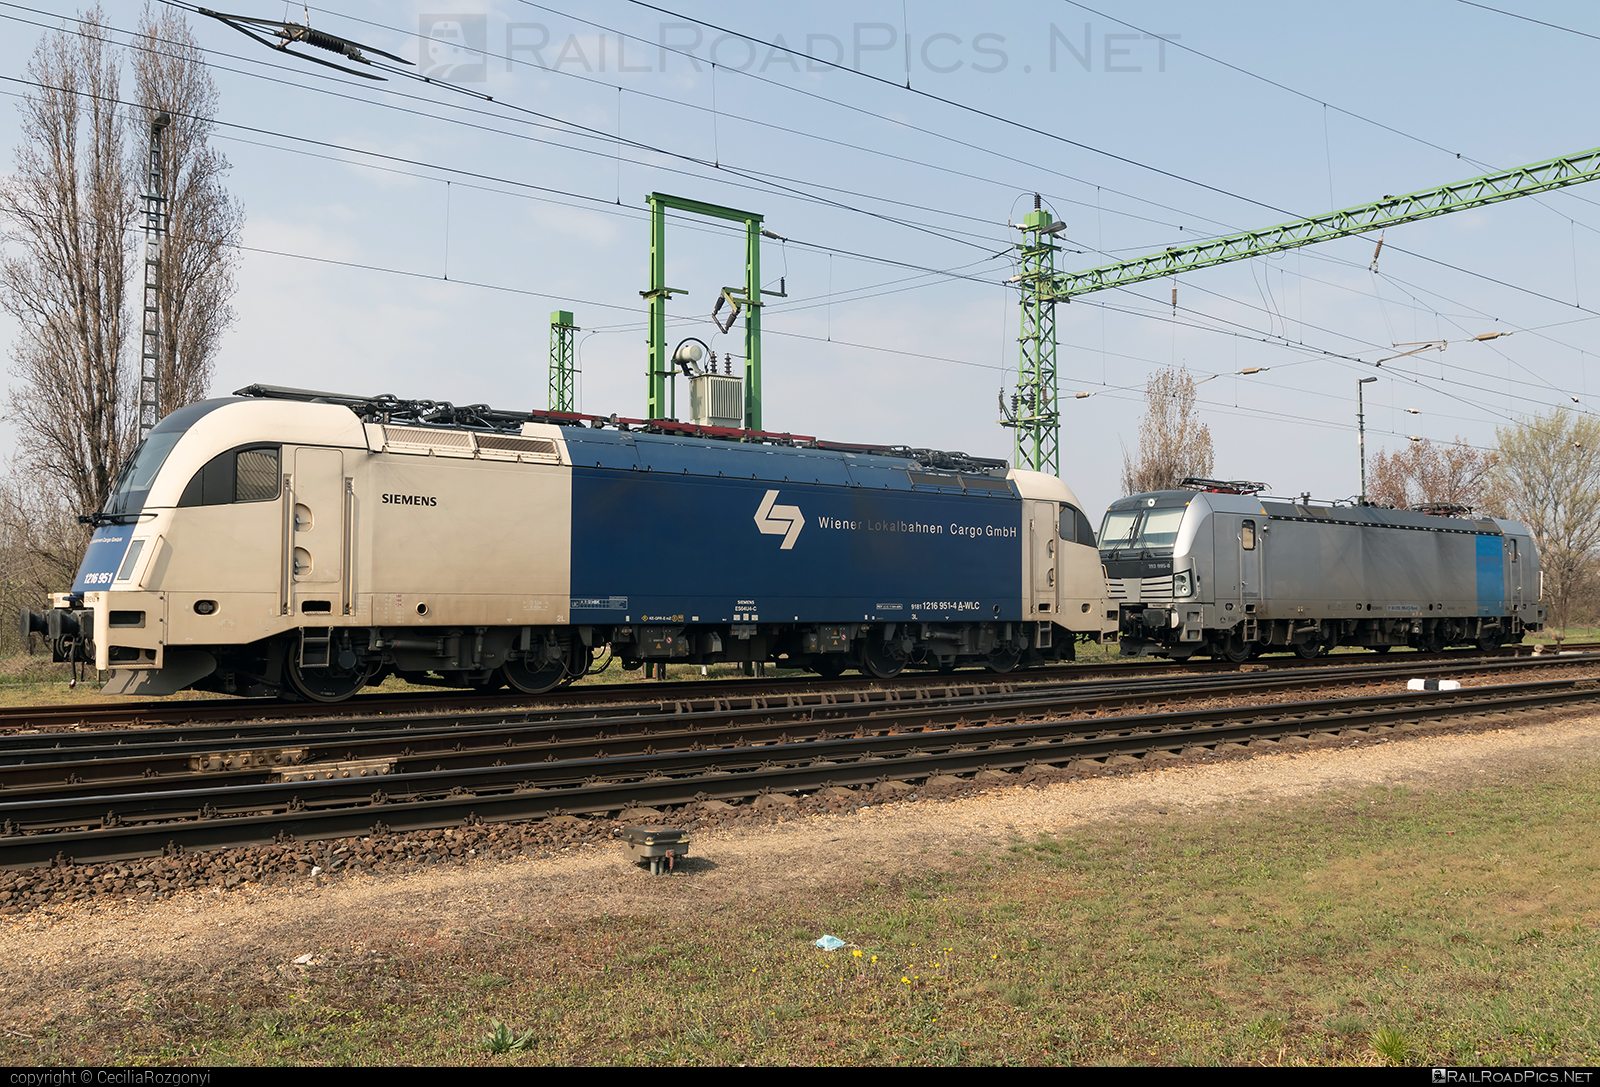 Siemens ES 64 U4 - 1216 951 operated by Wiener Lokalbahnen Cargo GmbH #es64 #es64u4 #eurosprinter #siemens #siemensEs64 #siemensEs64u4 #siemenstaurus #taurus #tauruslocomotive #wienerlokalbahnencargo #wienerlokalbahnencargogmbh #wlc